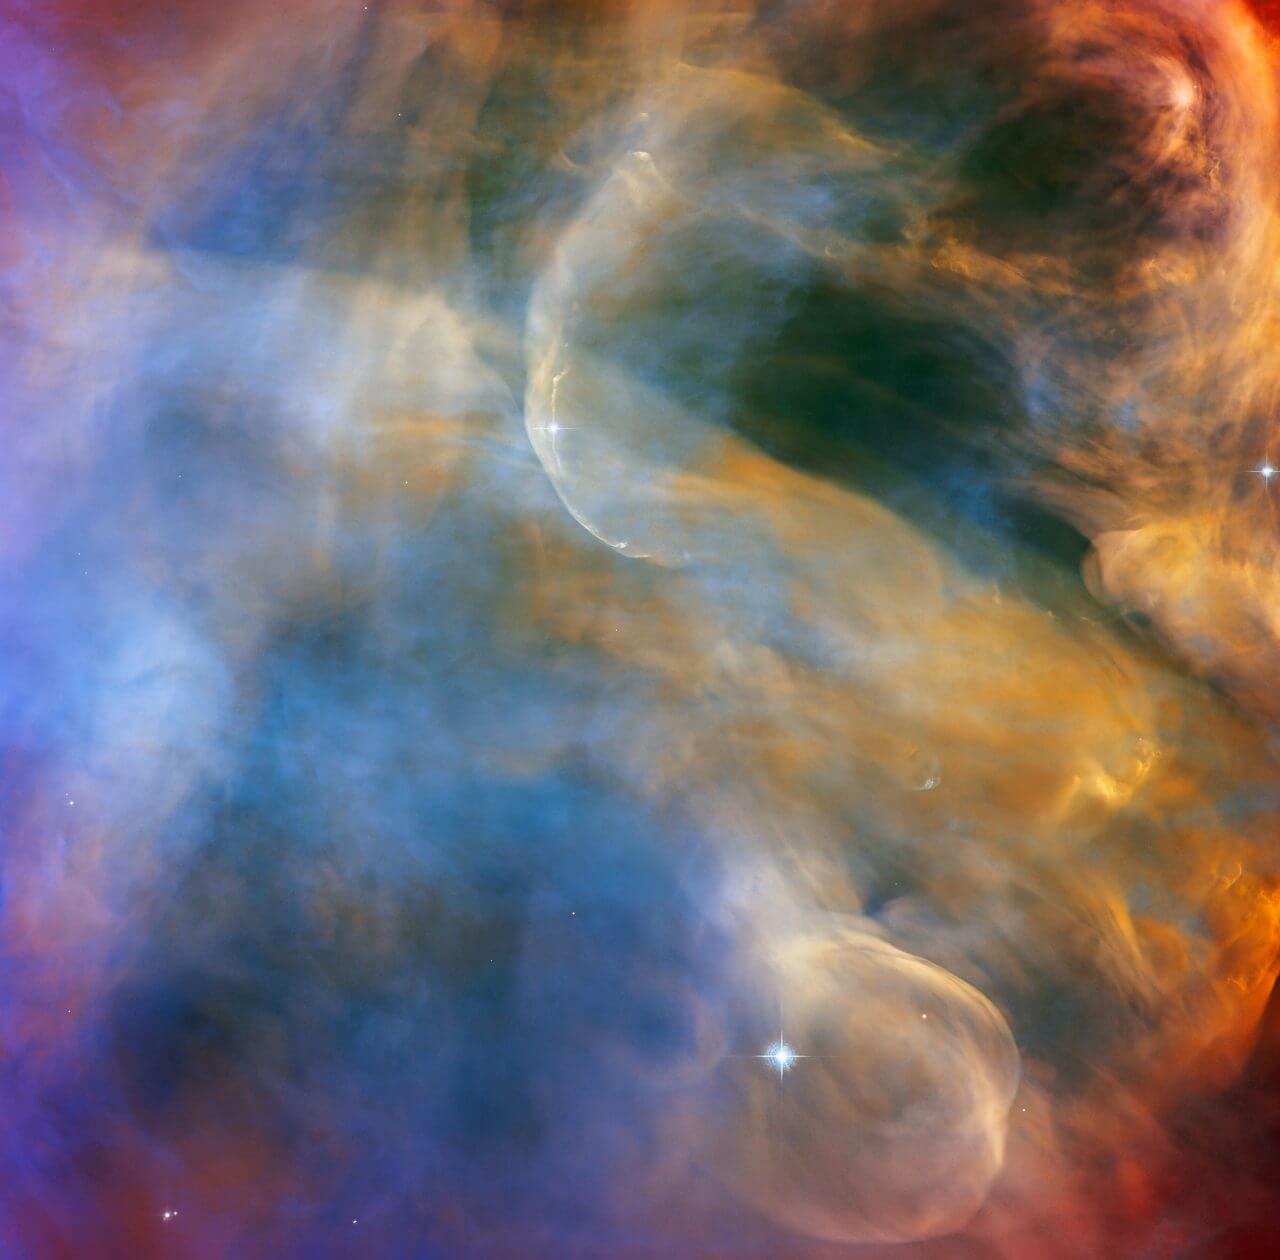 ハッブル宇宙望遠鏡が撮影、オリオン大星雲のハービッグ・ハロー天体